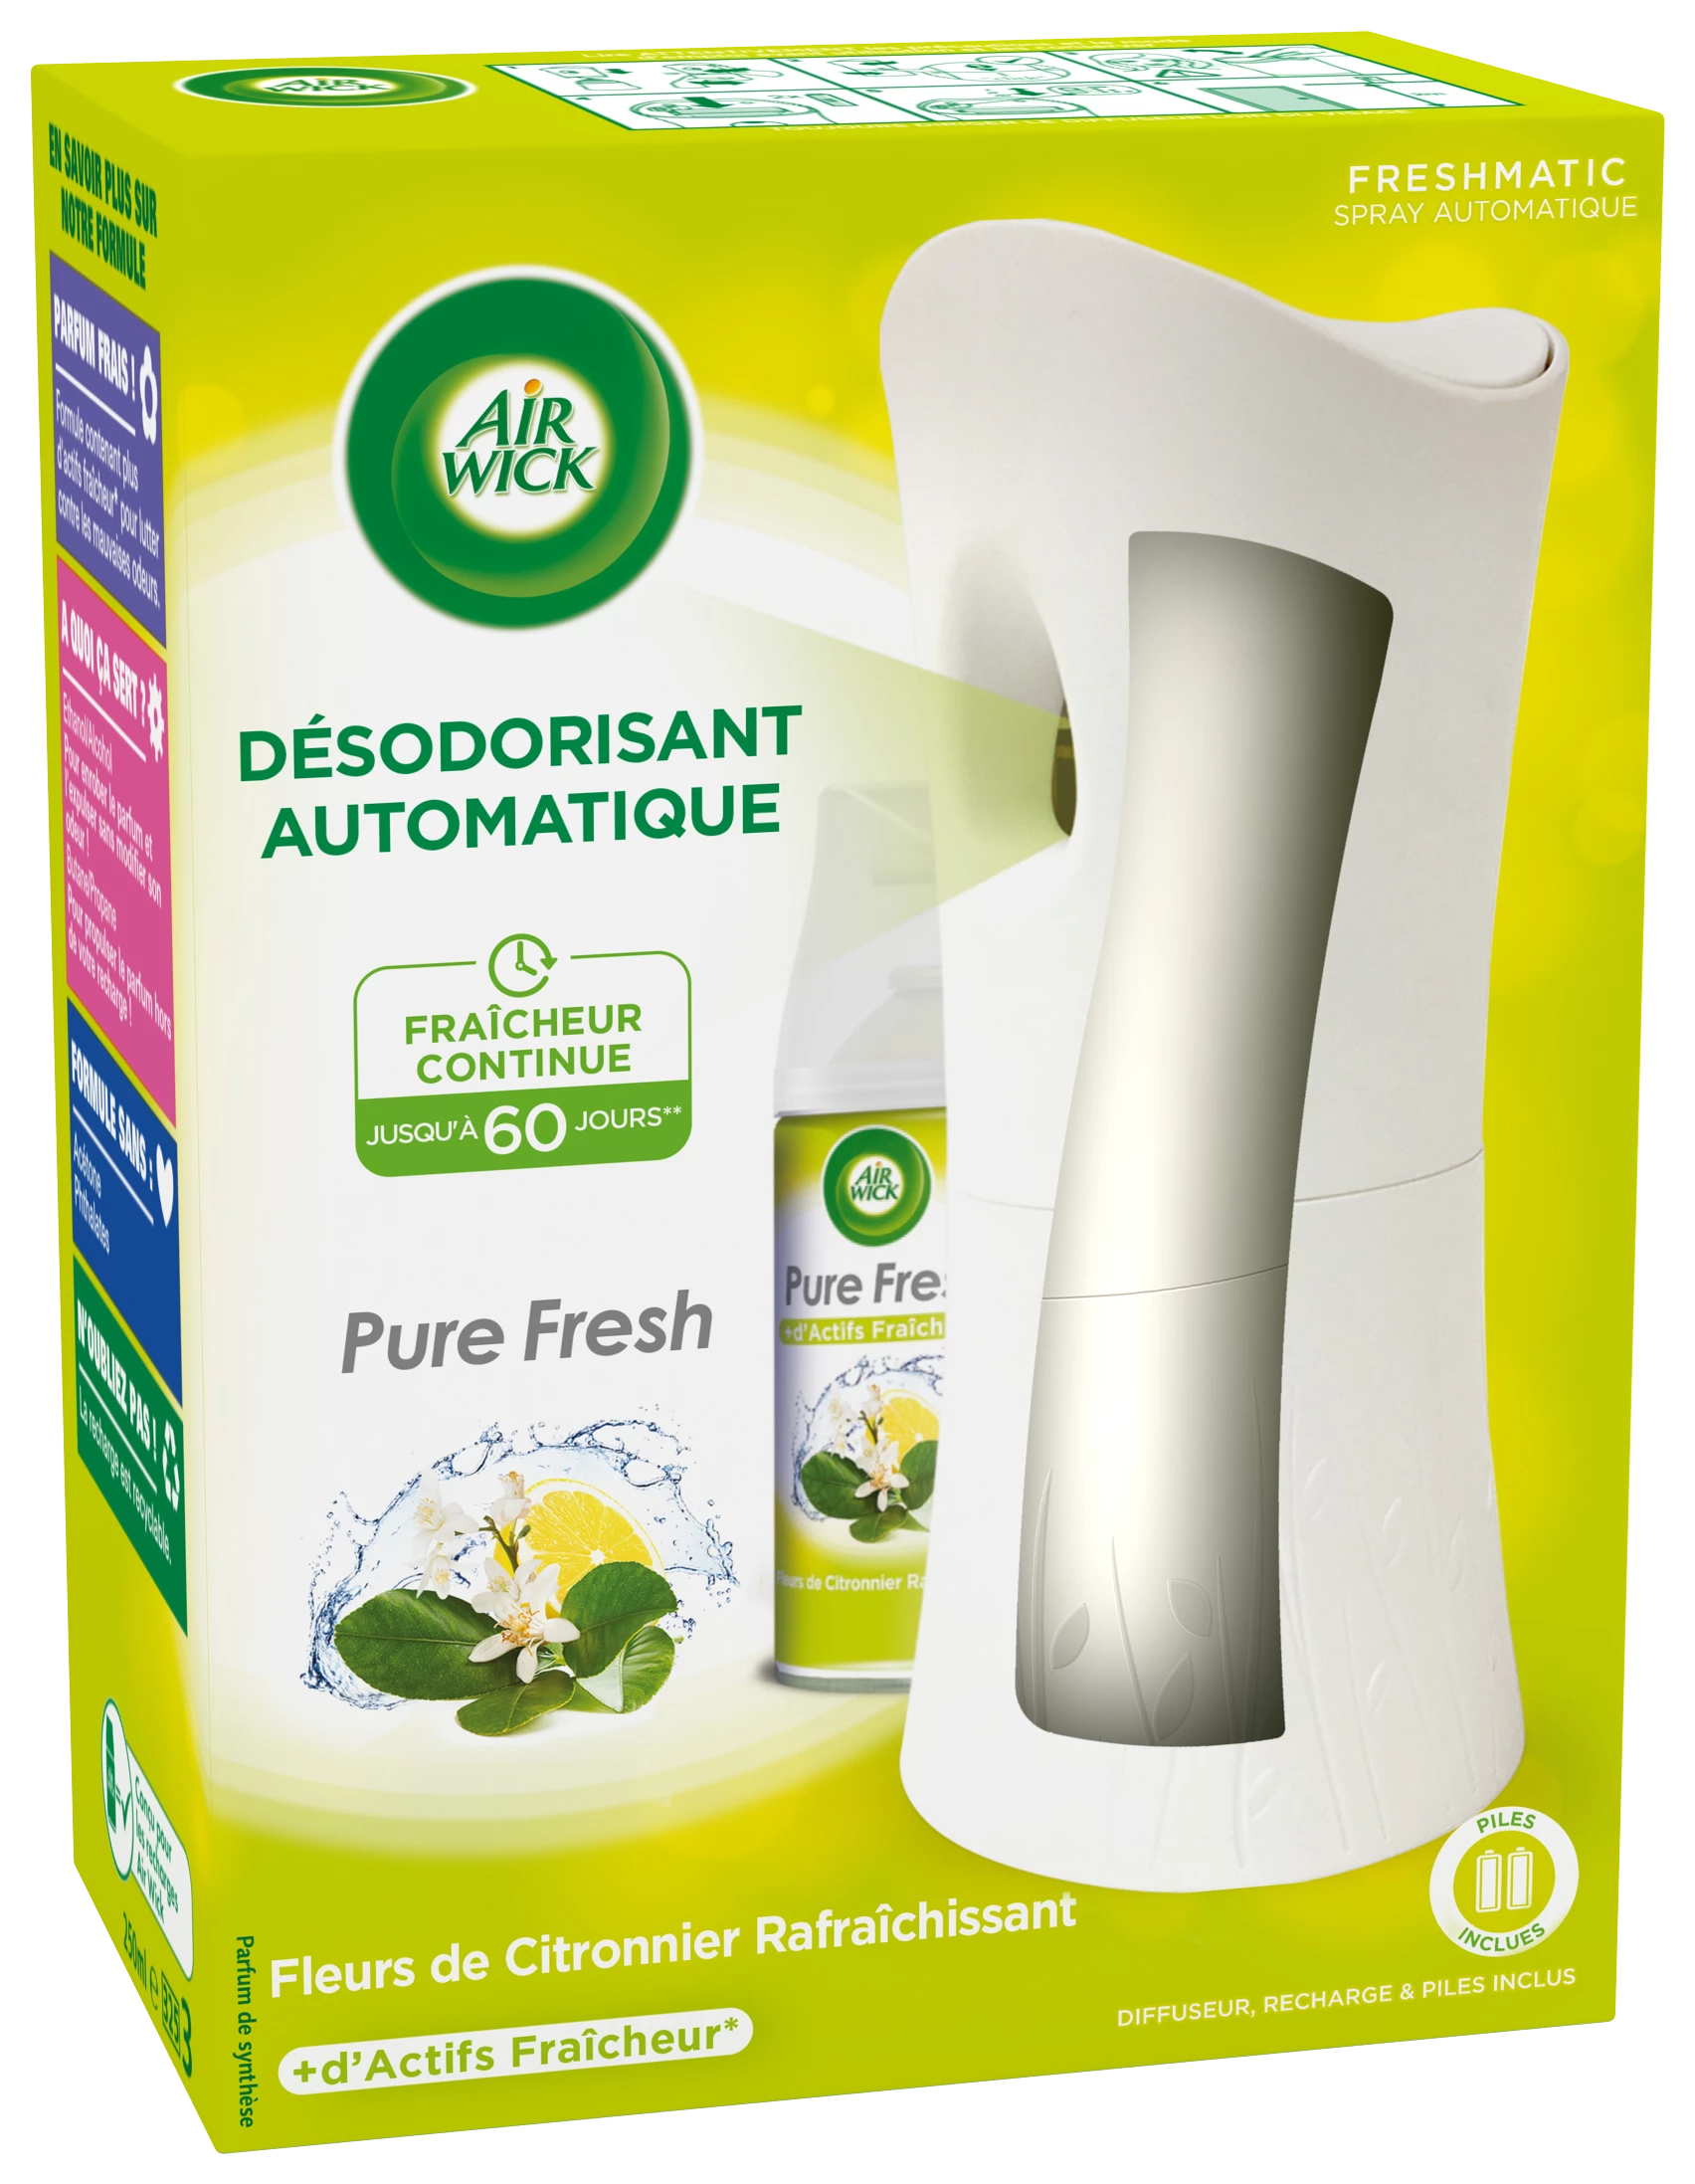 Freshmatic Pure Lemon Air Freshener - AIR WICK